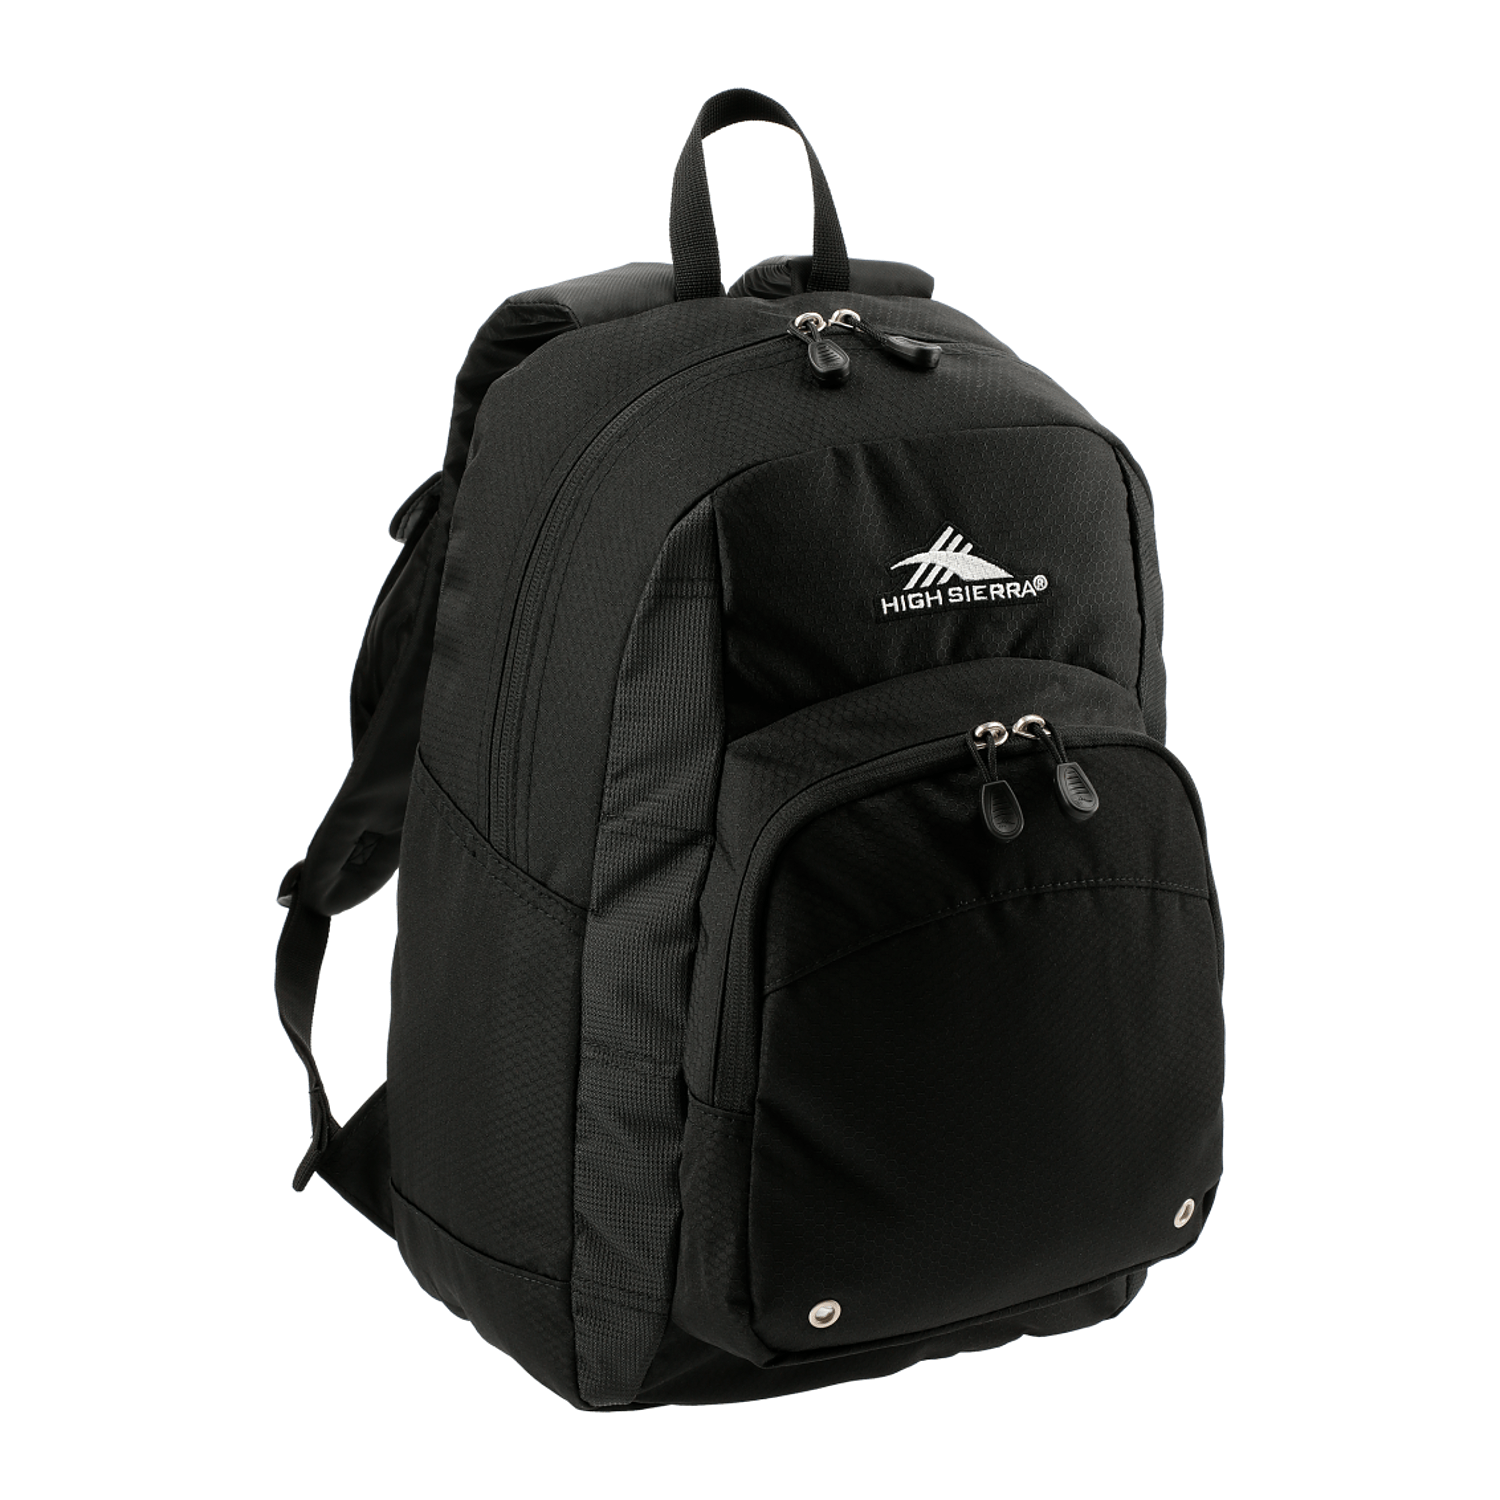 High Sierra Bags One Size / Black High Sierra - Impact Backpack